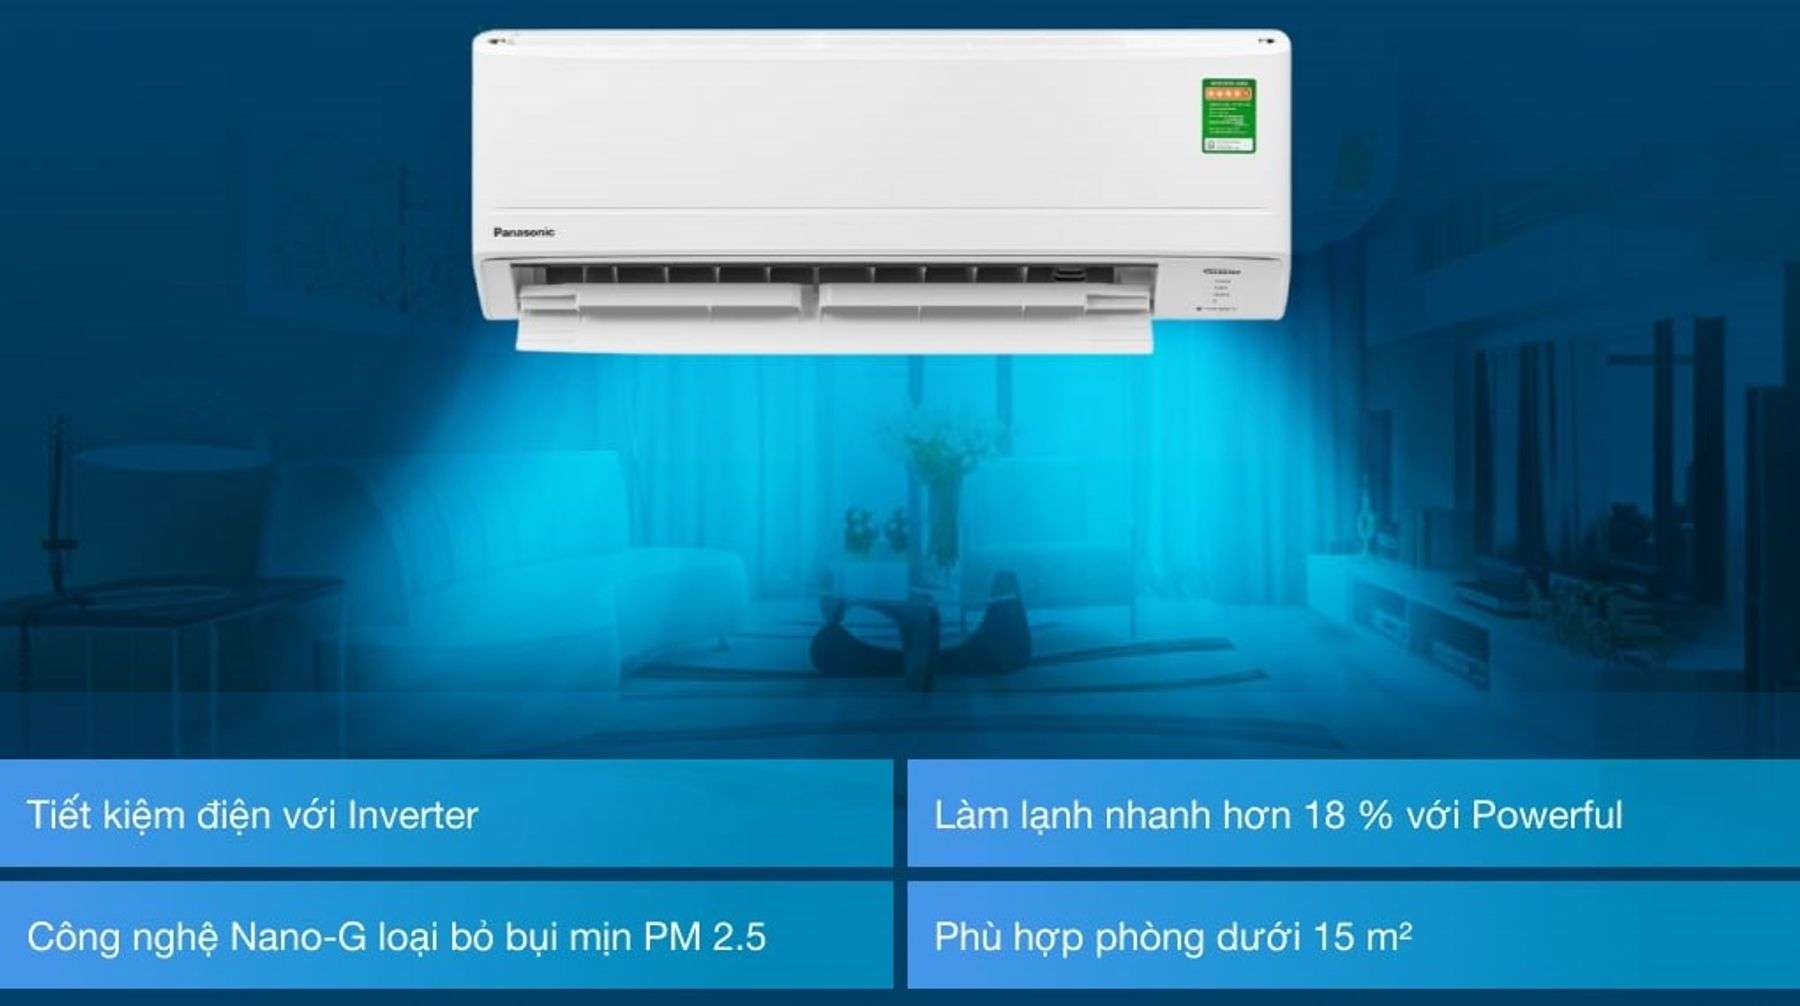 Máy lạnh Panasonic Inverter 1 HP tiết kiệm điện